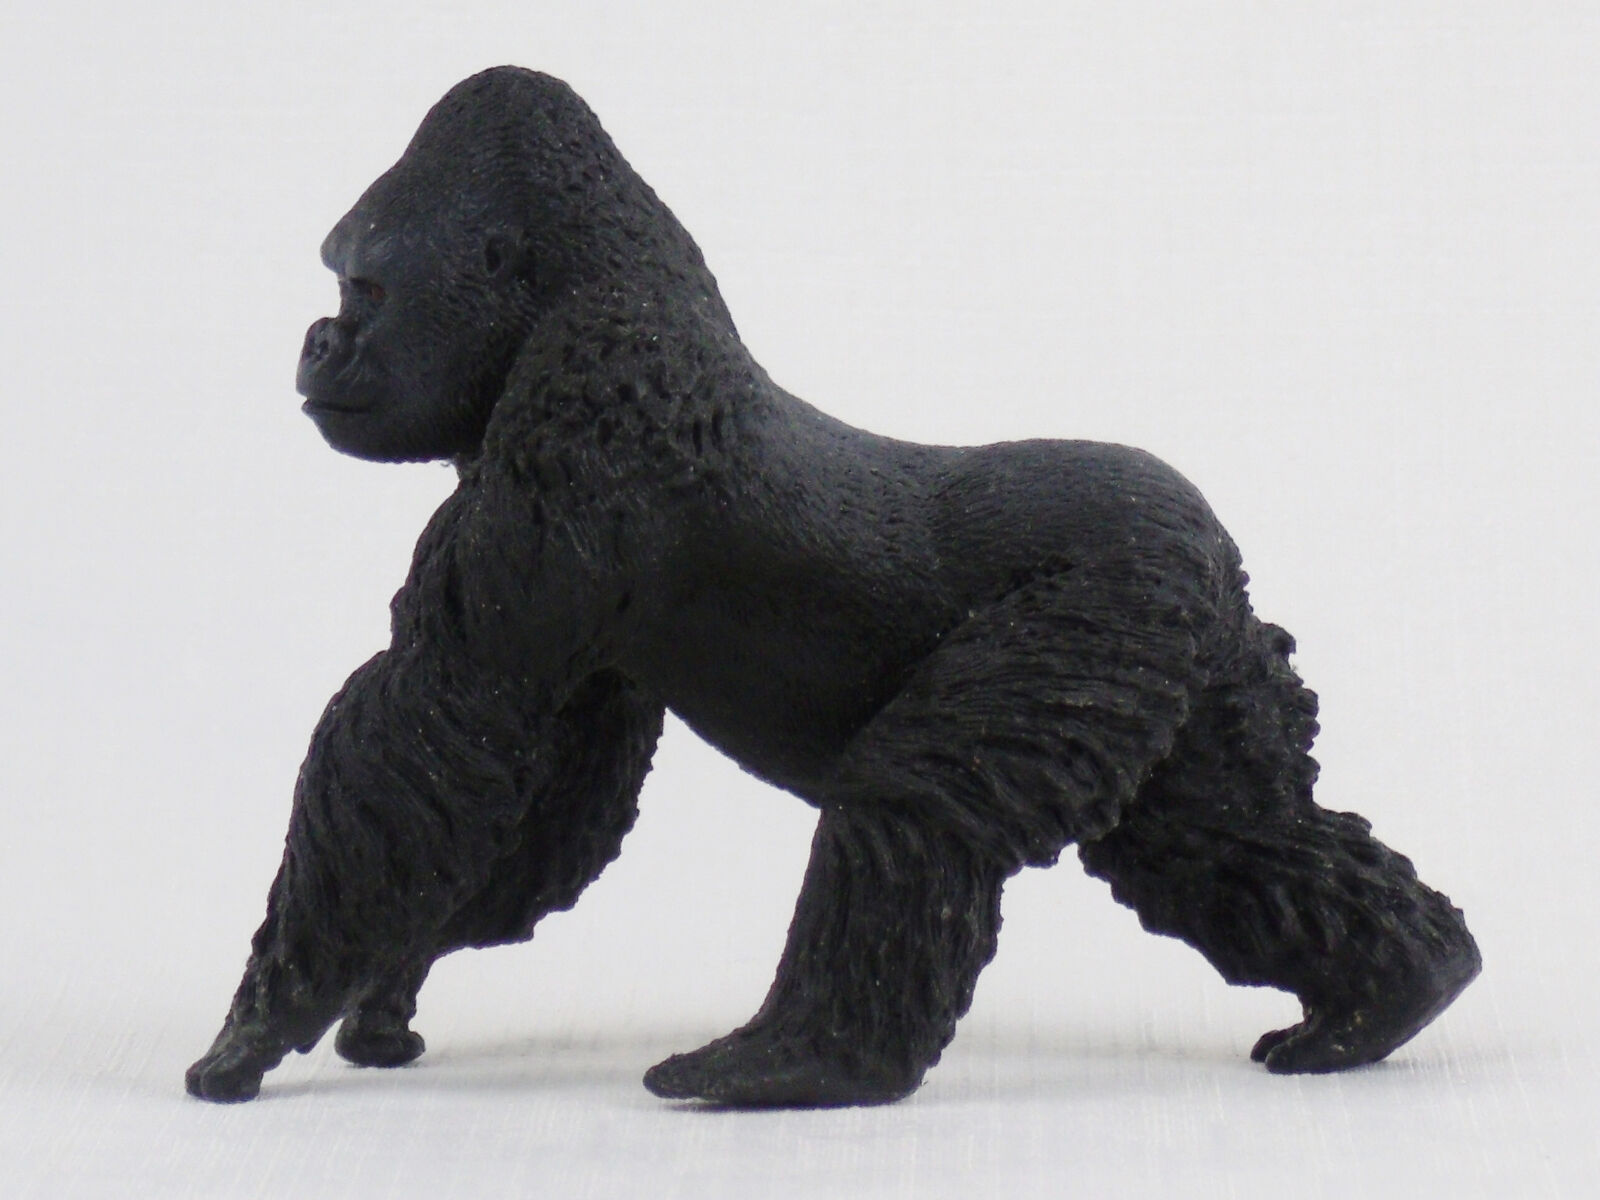 Schleich Male Gorilla Wild Animal Figure 14770 Retired